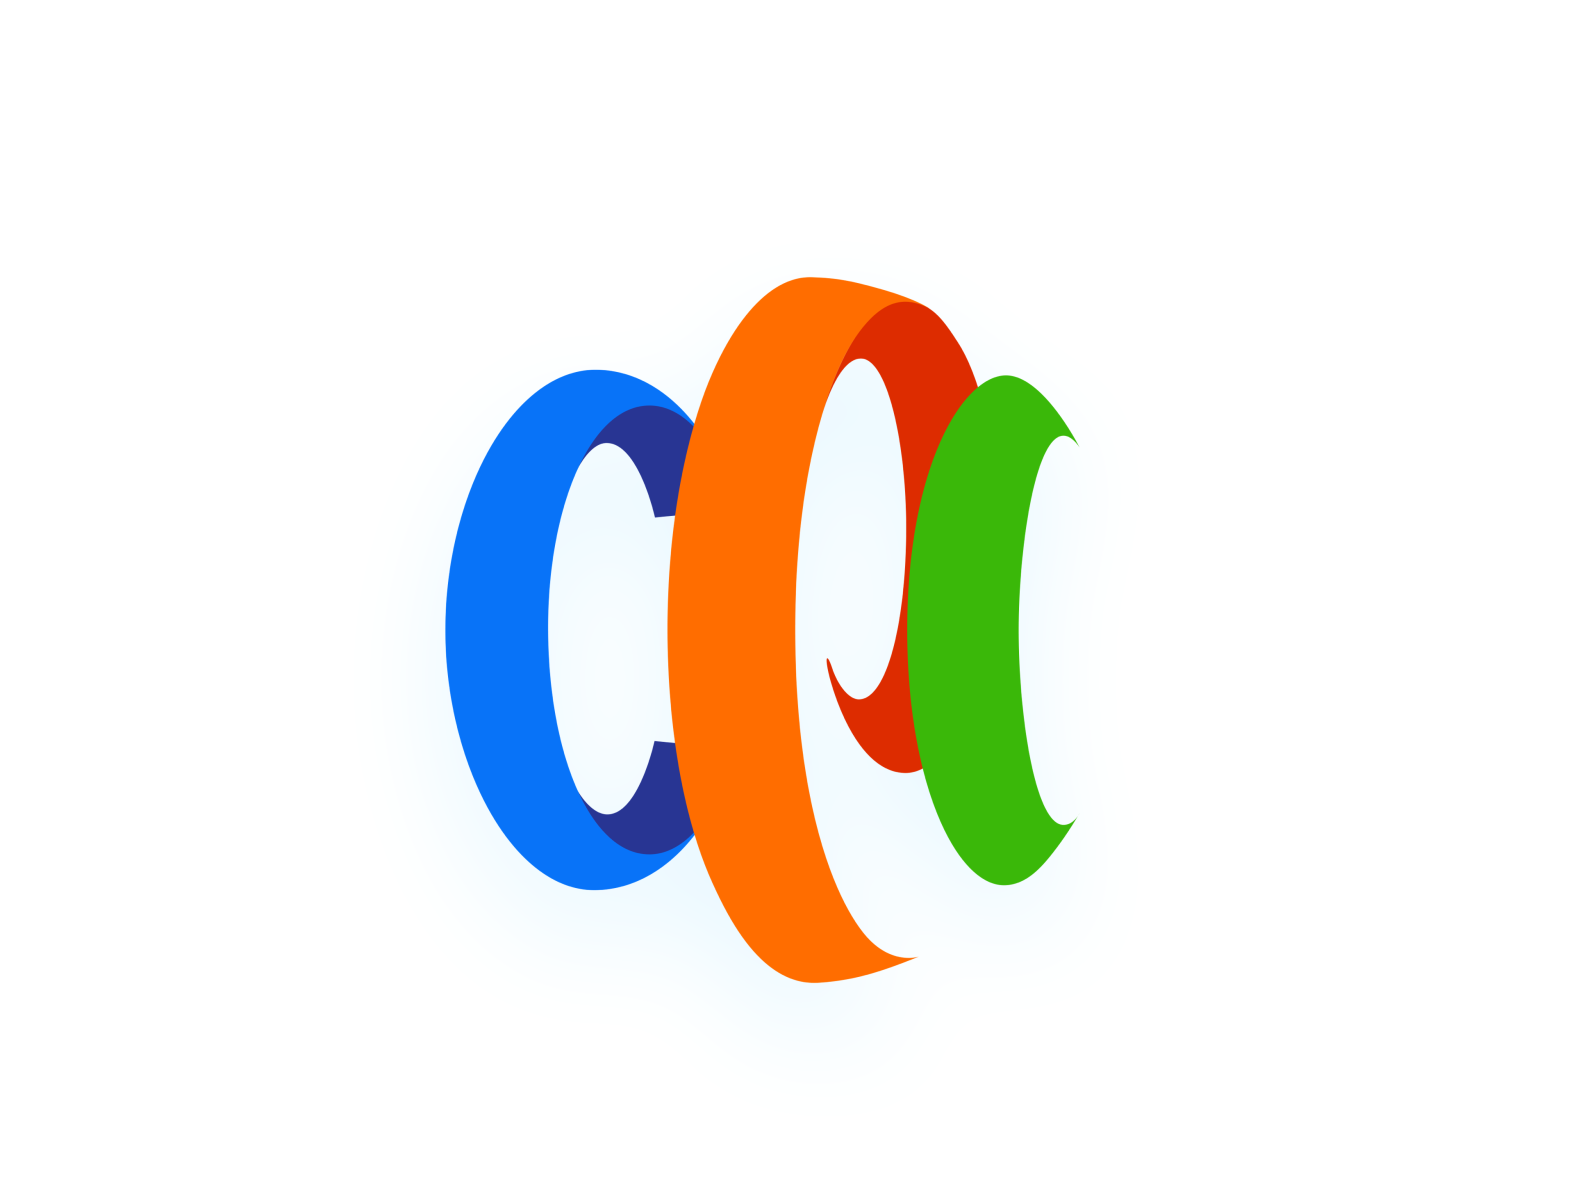 Computer Professionals Inc. (CPI) new logo design